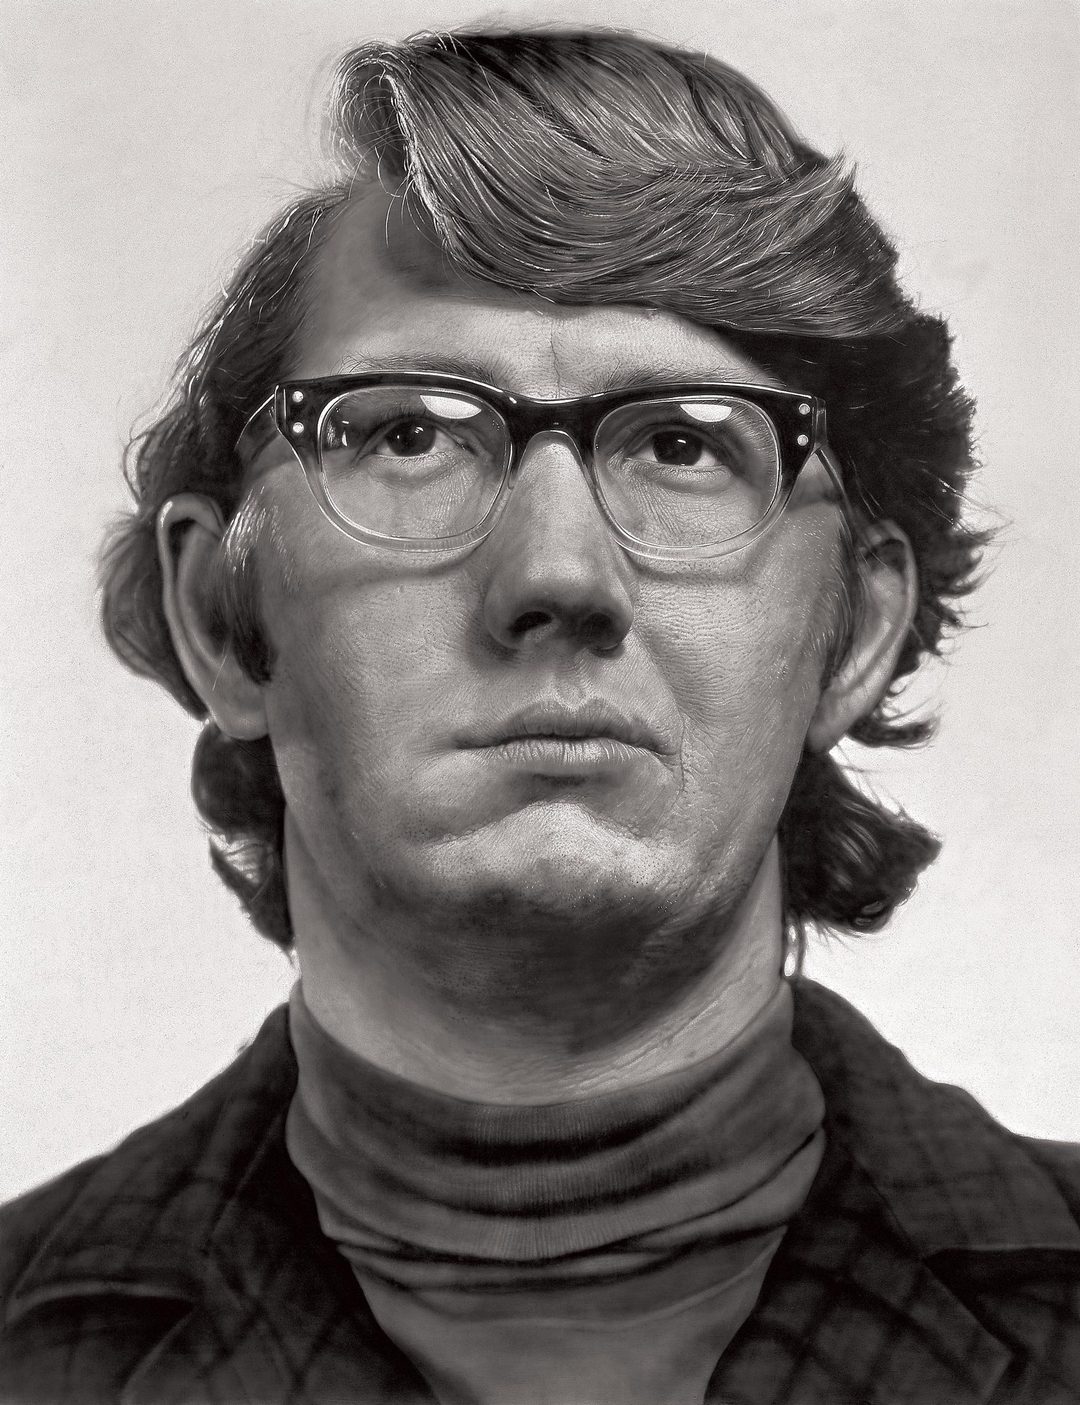 超写实主义画家查克克洛斯去世他的画作挑战人类肉眼极限